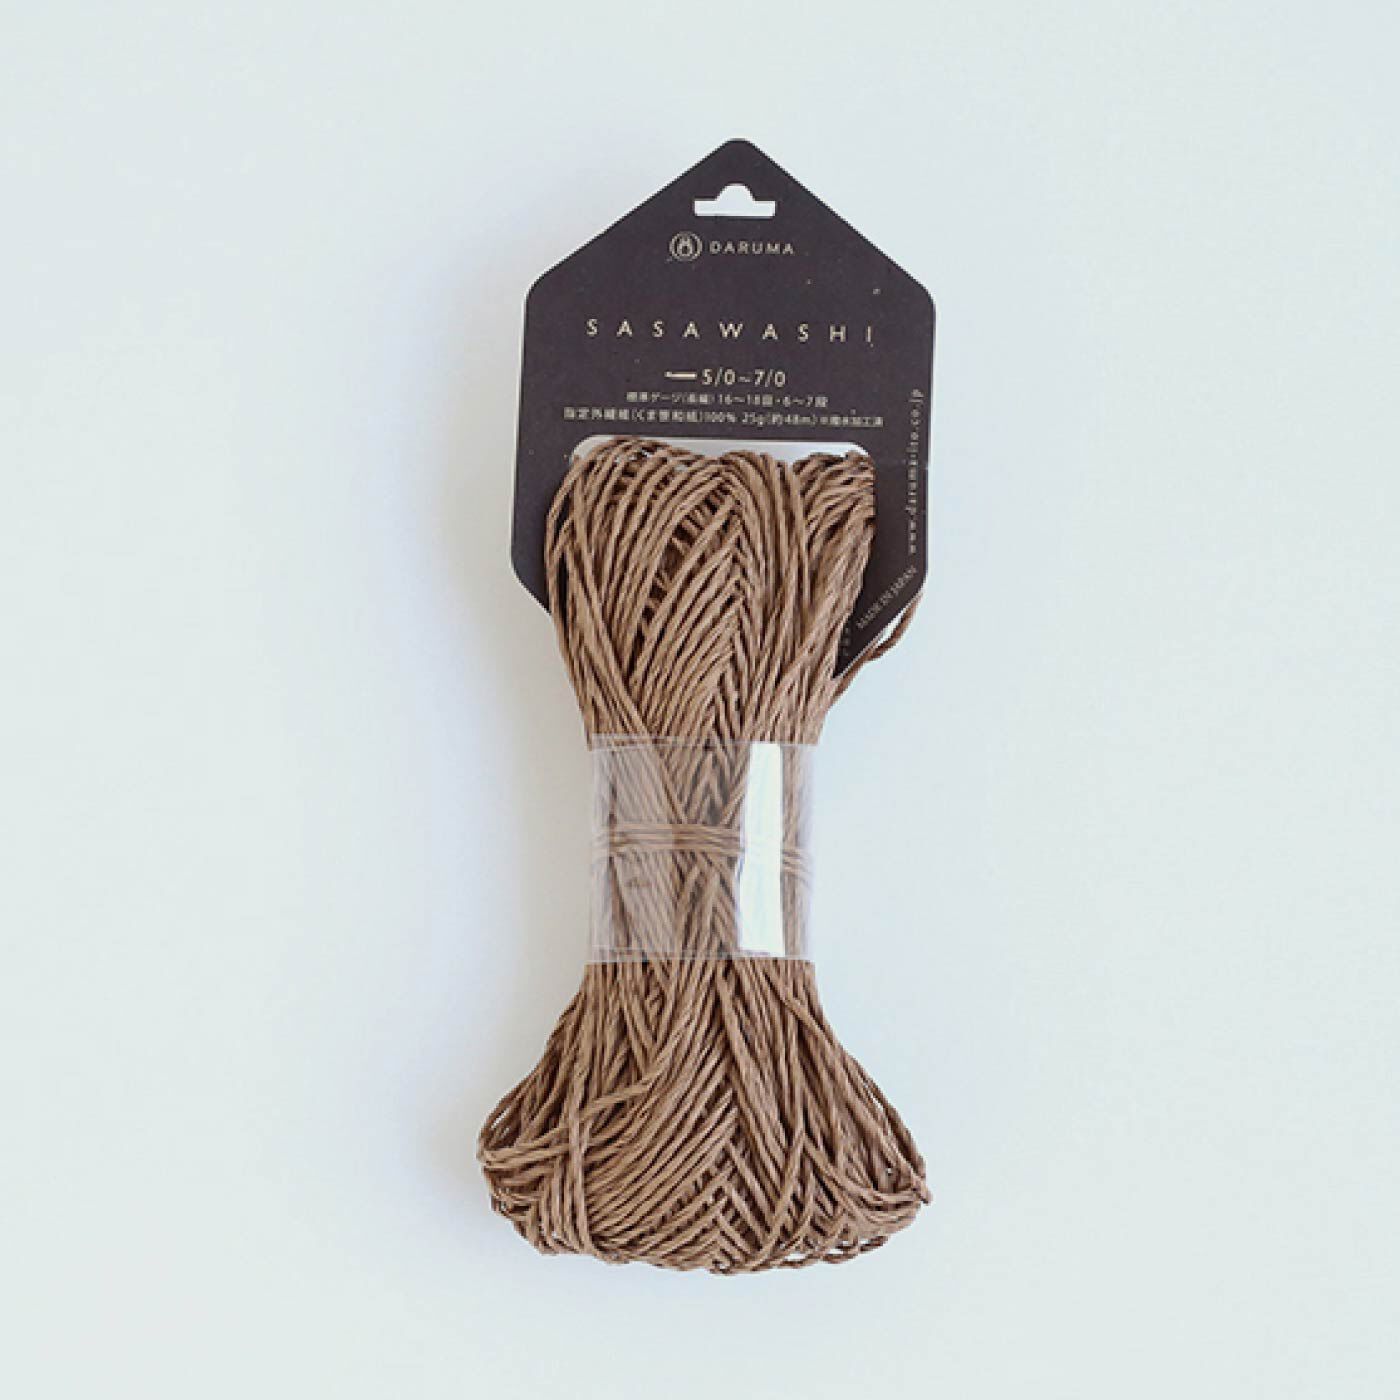 Couturier special|帽子が編める　ナチュラルカラーのＳＡＳＡＷＡＳＨＩ糸とミニブック「ＰａｔｔｅｒｎｓＮｏｔｅ」|3 ブラウン